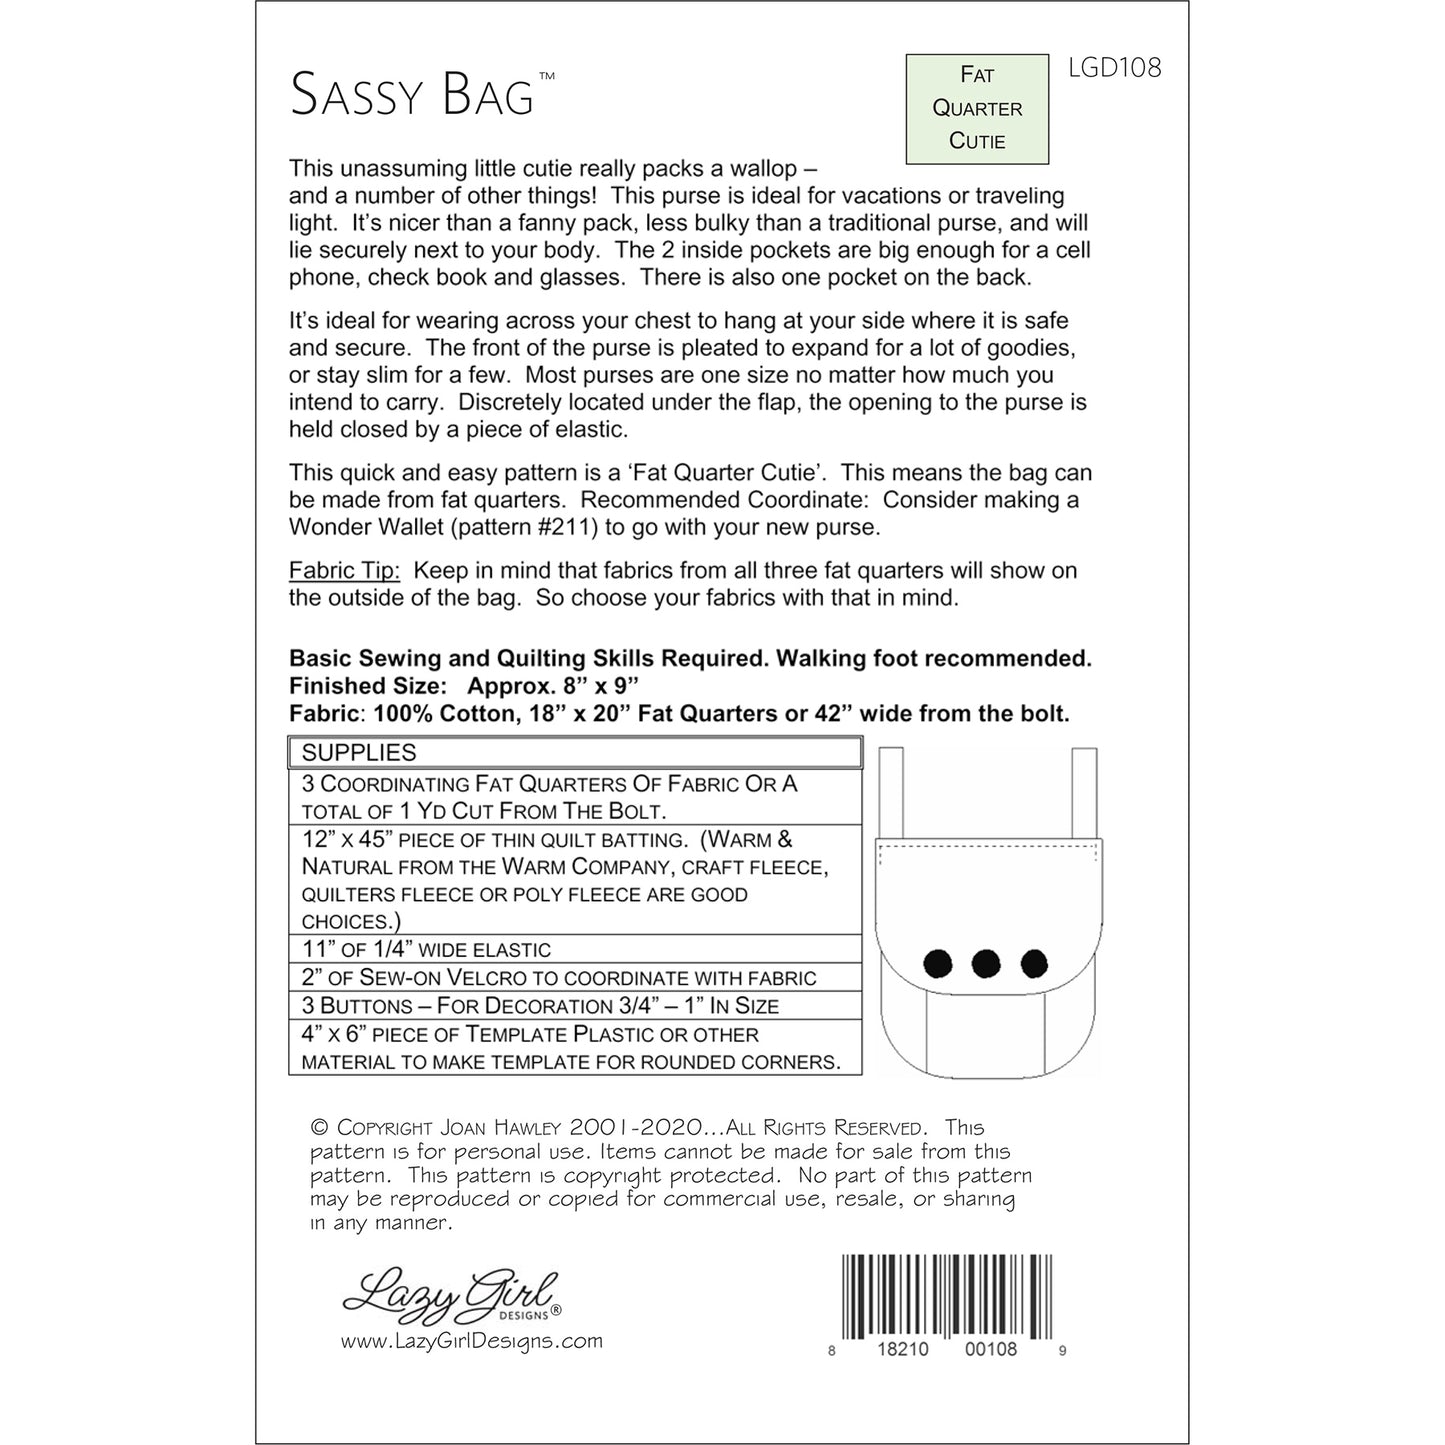 Sassy Bag PDF Pattern